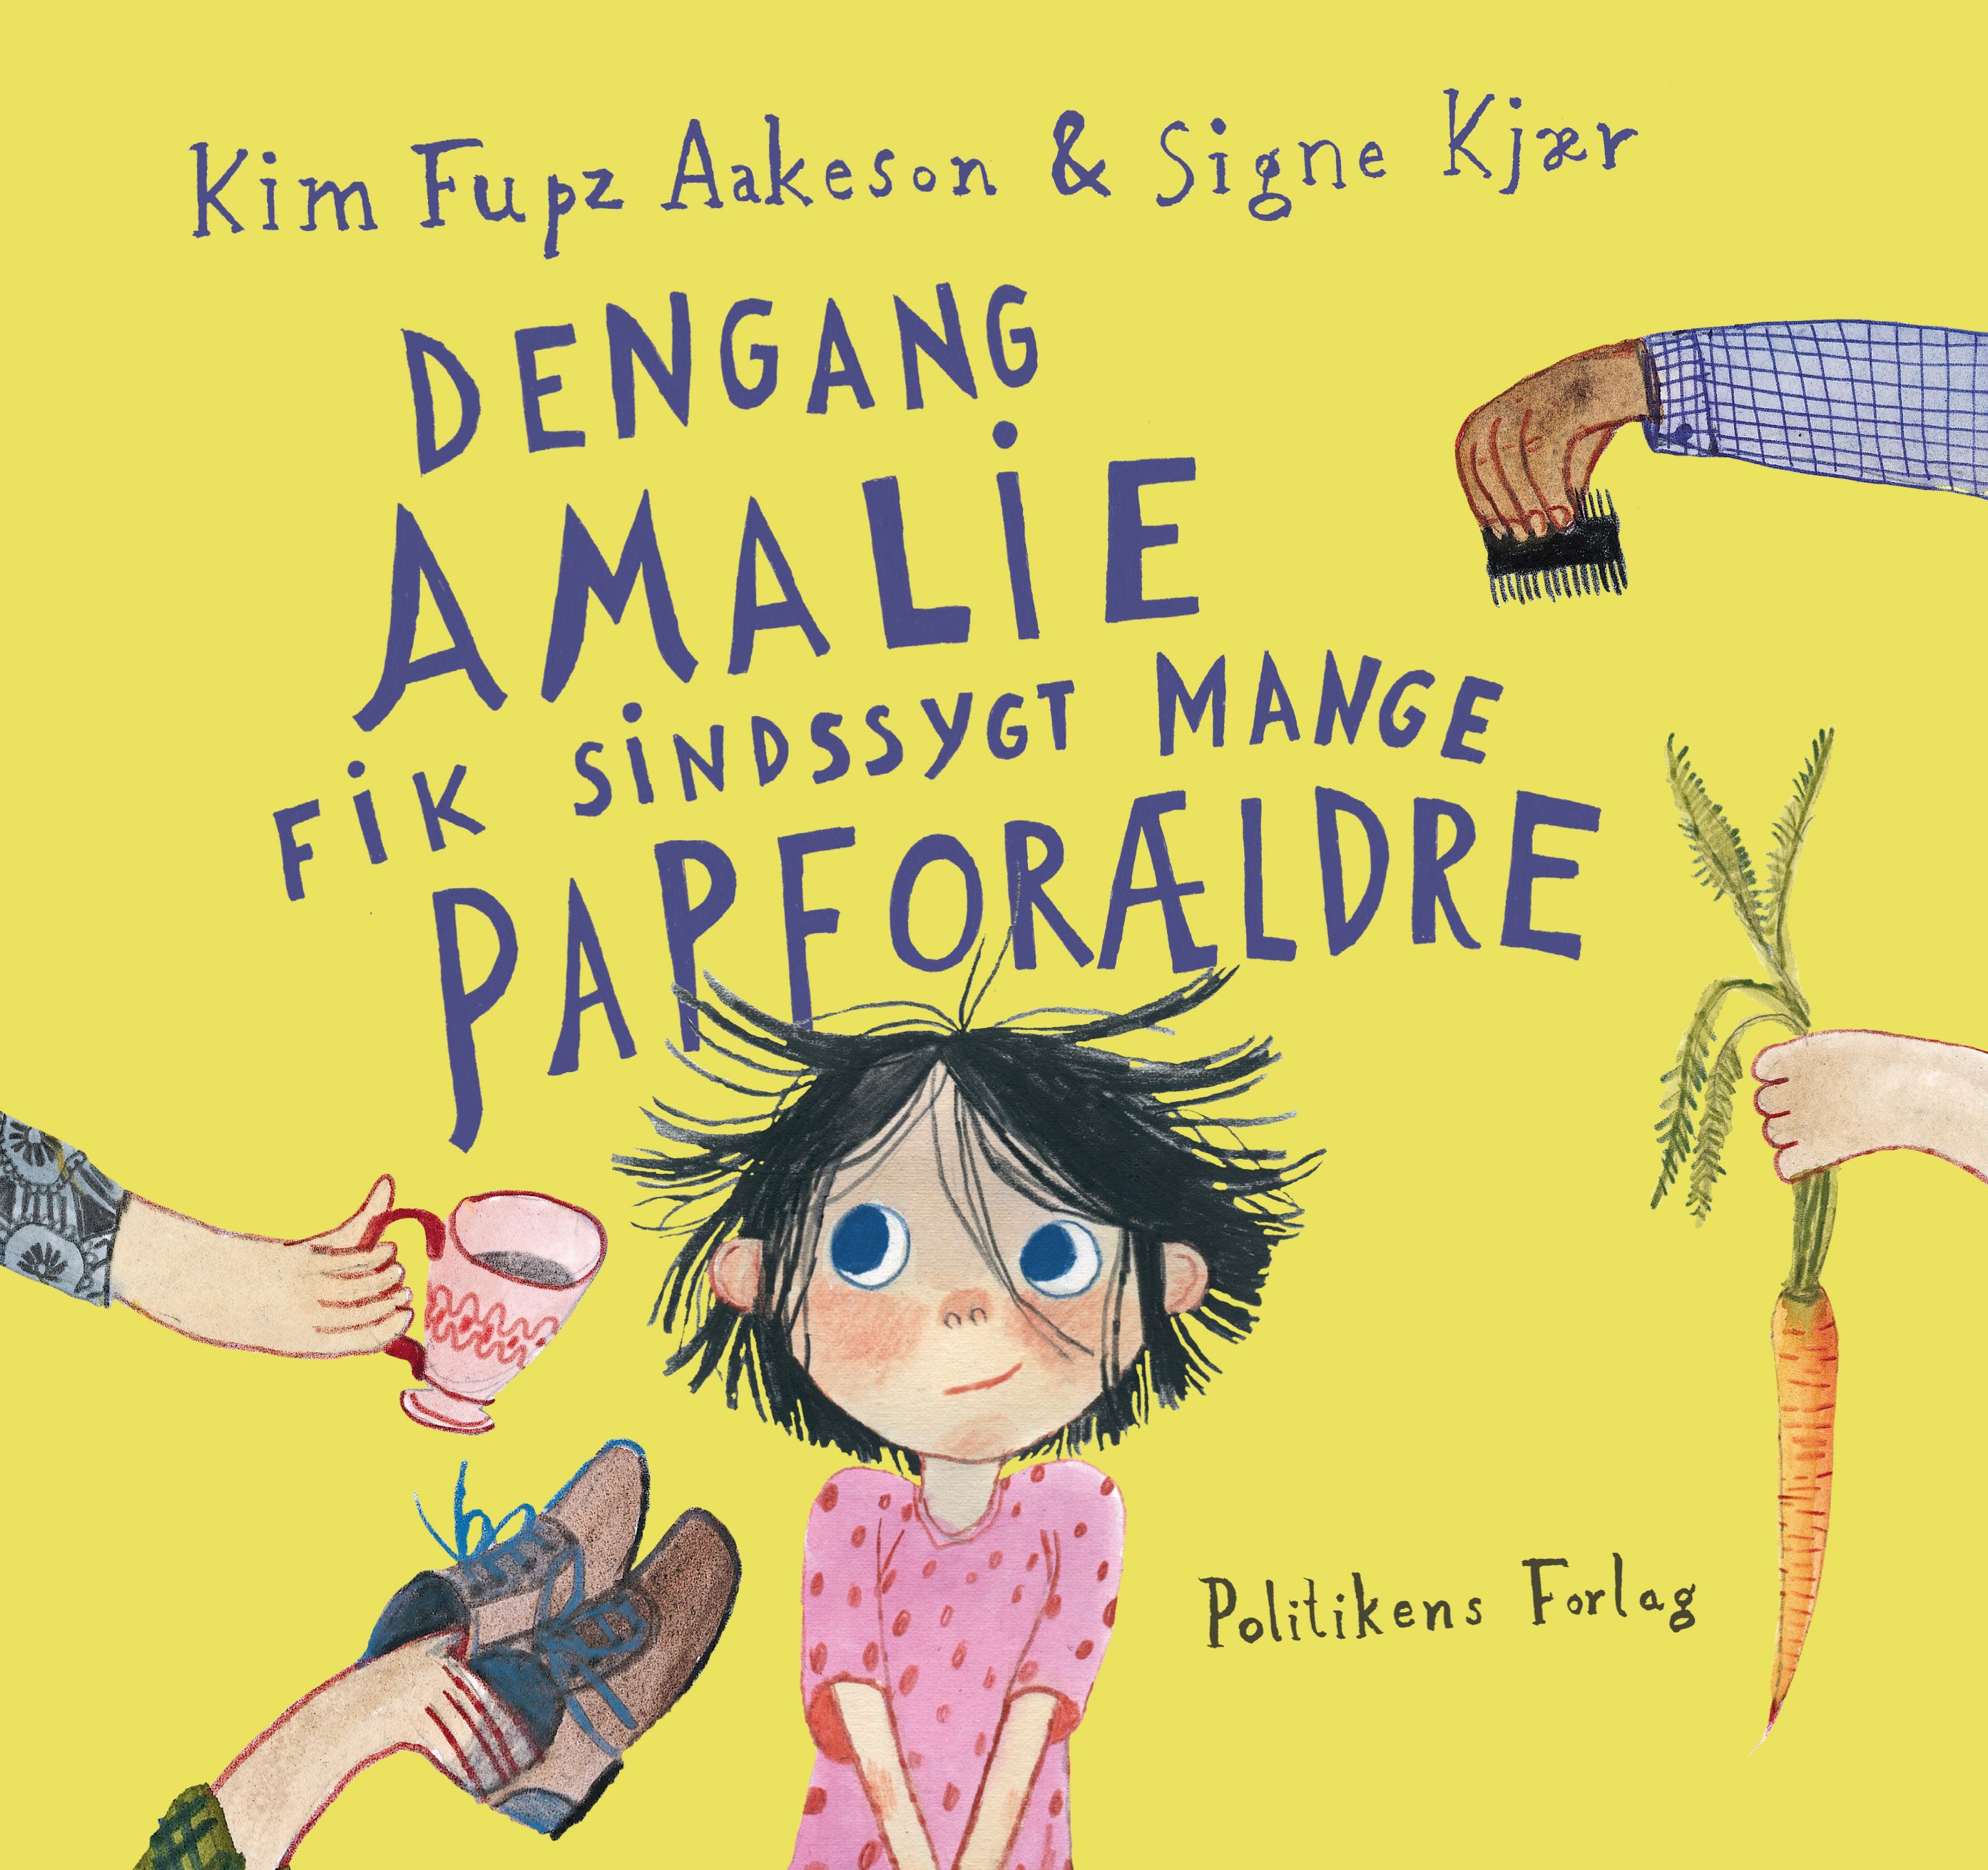 Dengang Amalie fik sindssygt mange papforældre, e-bog af Kim Fupz Aakeson